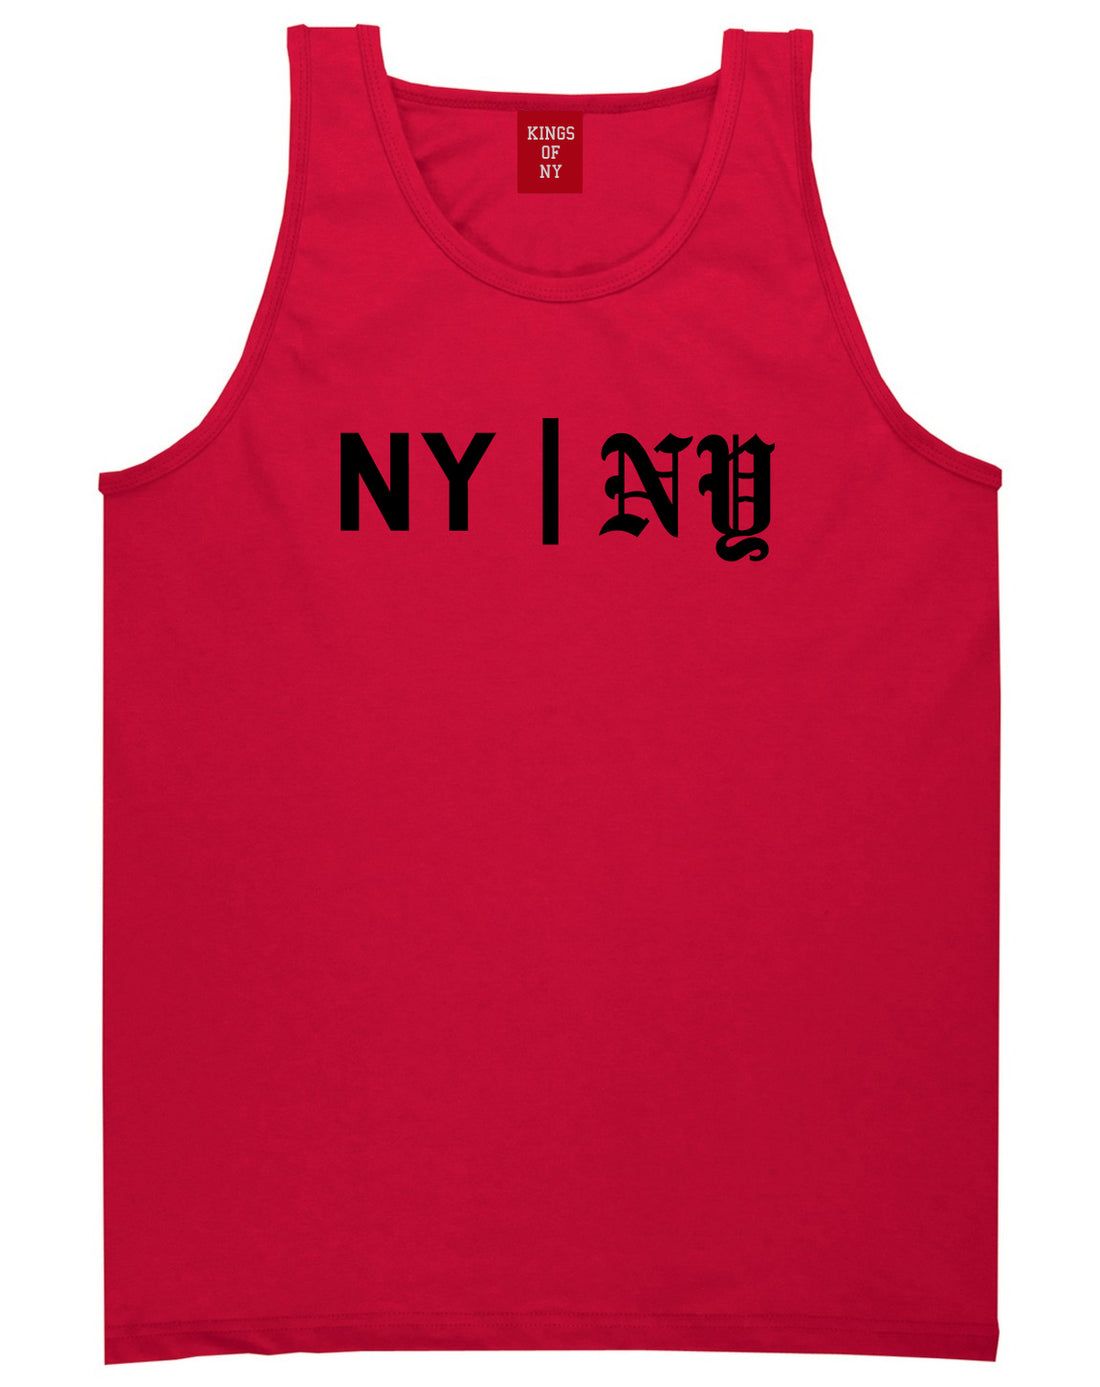 NY vs NY Mens Tank Top Shirt Red